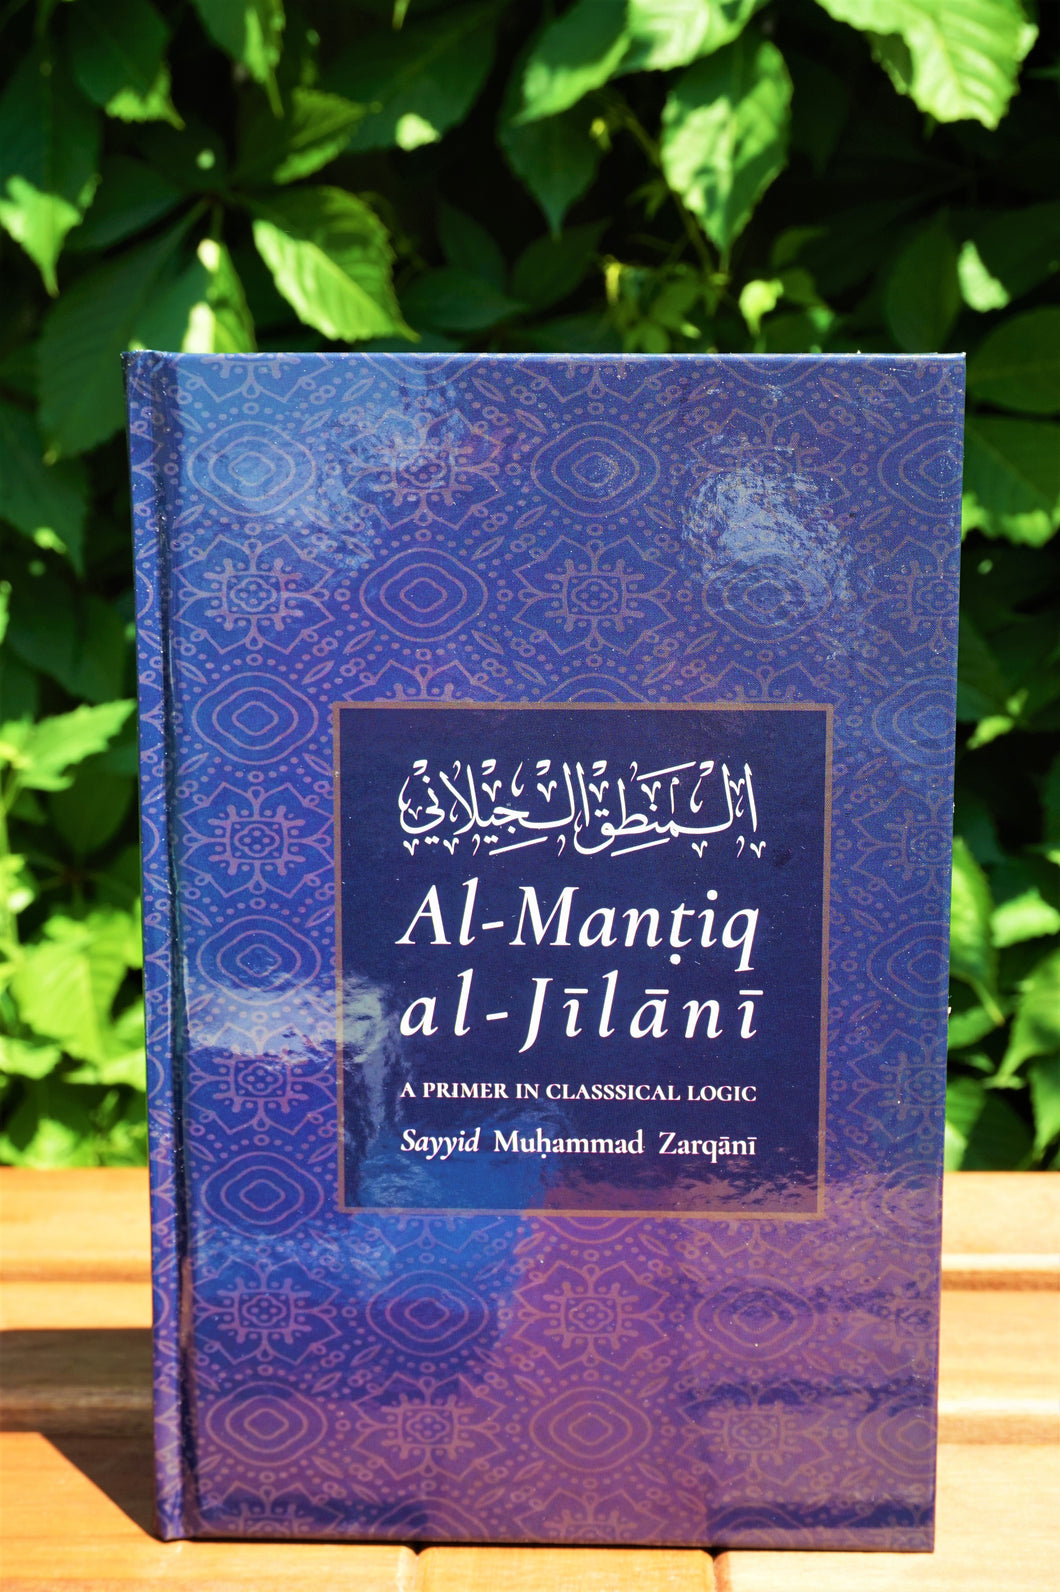 Al-Mantiq al-Jilani: A Primer in Classical Logic